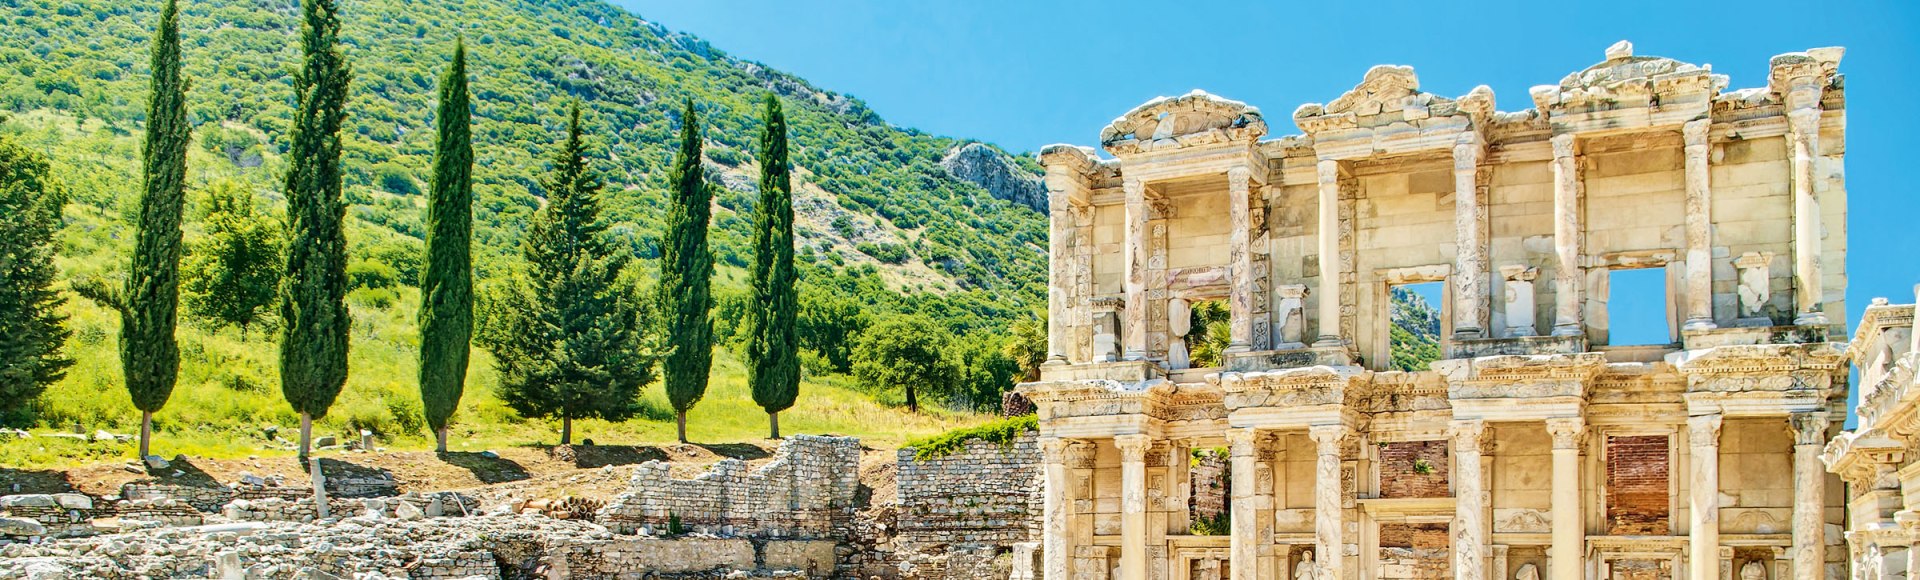 Legendär: die Celsus-Bibliothek in Ephesus, Türkei, © aygulchik99 - stock.adobe.com